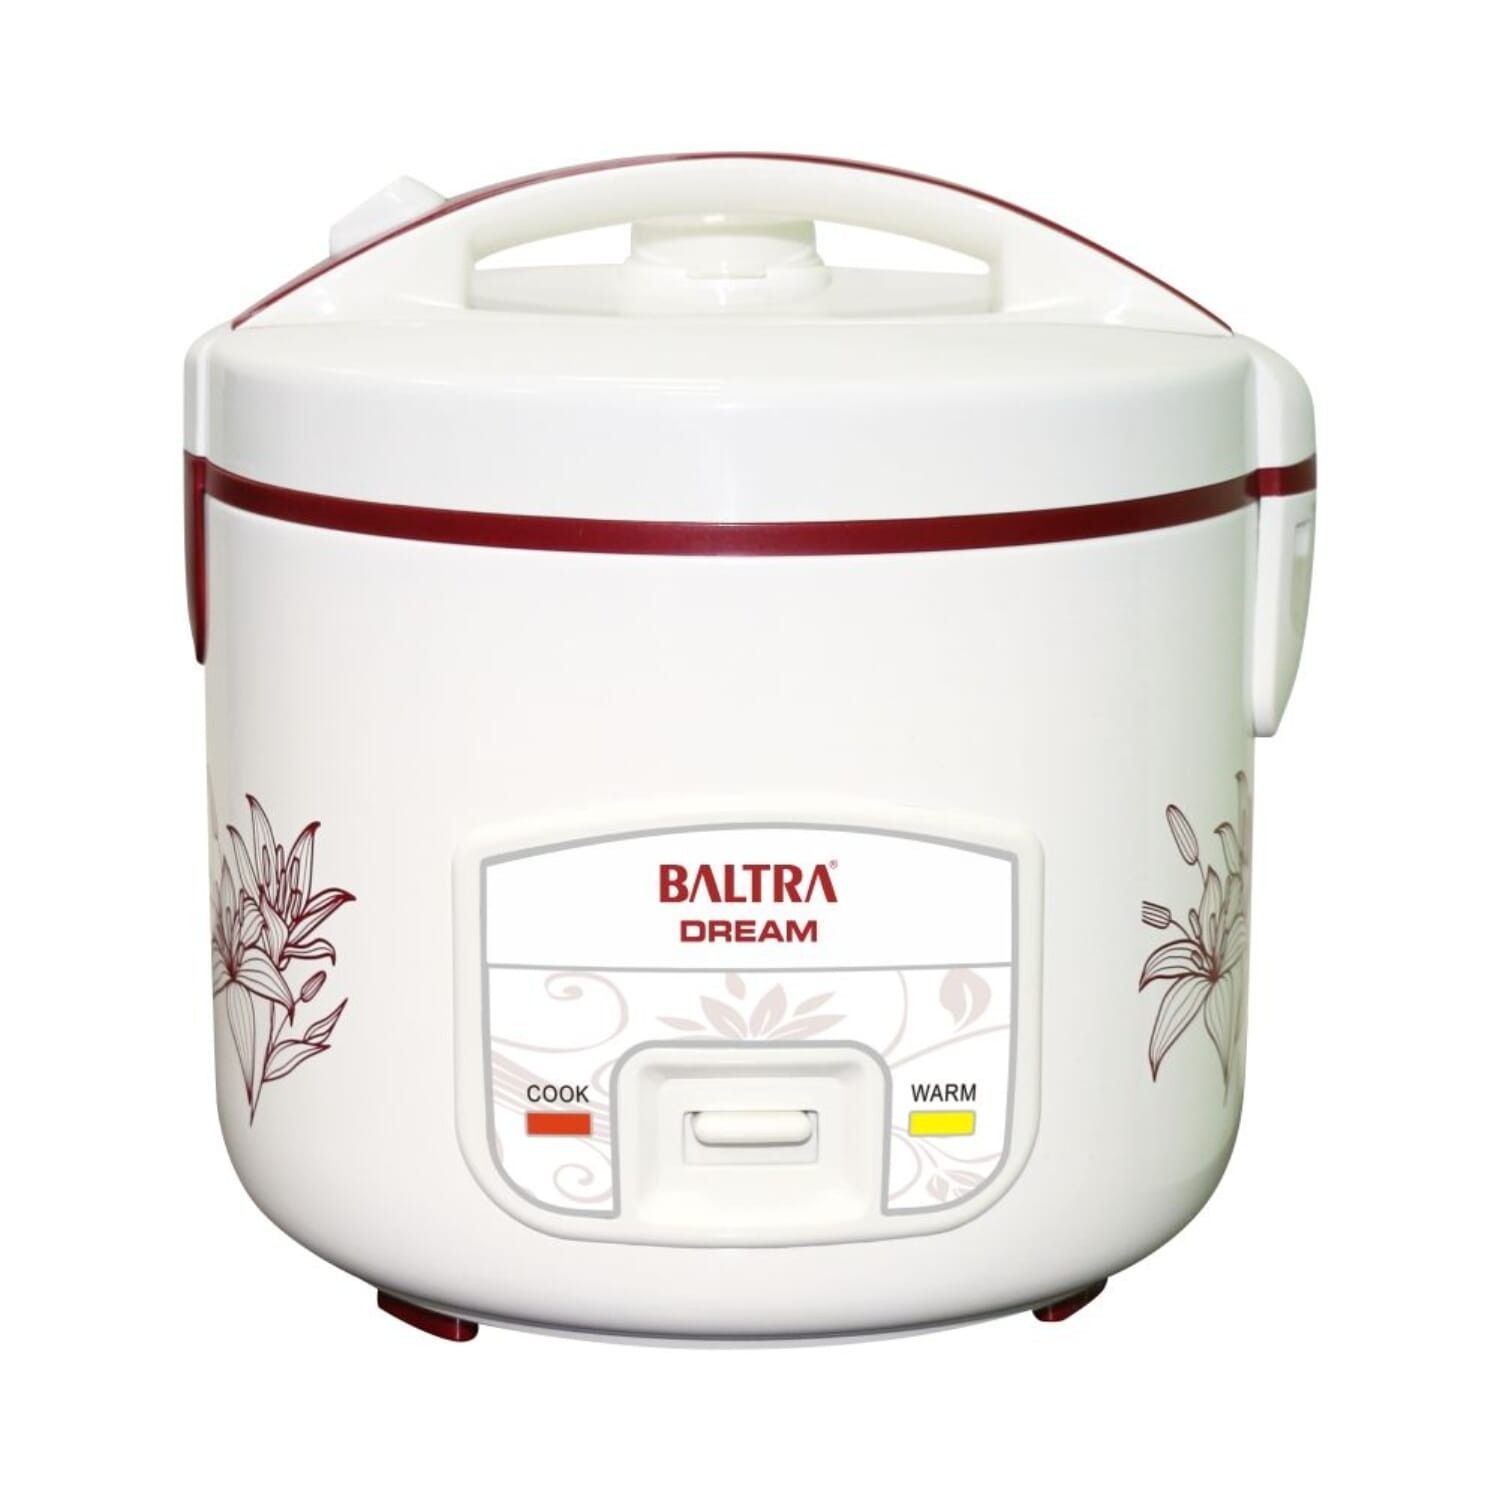 Baltra Deluxe Rice Cooker Btd 900d Dream